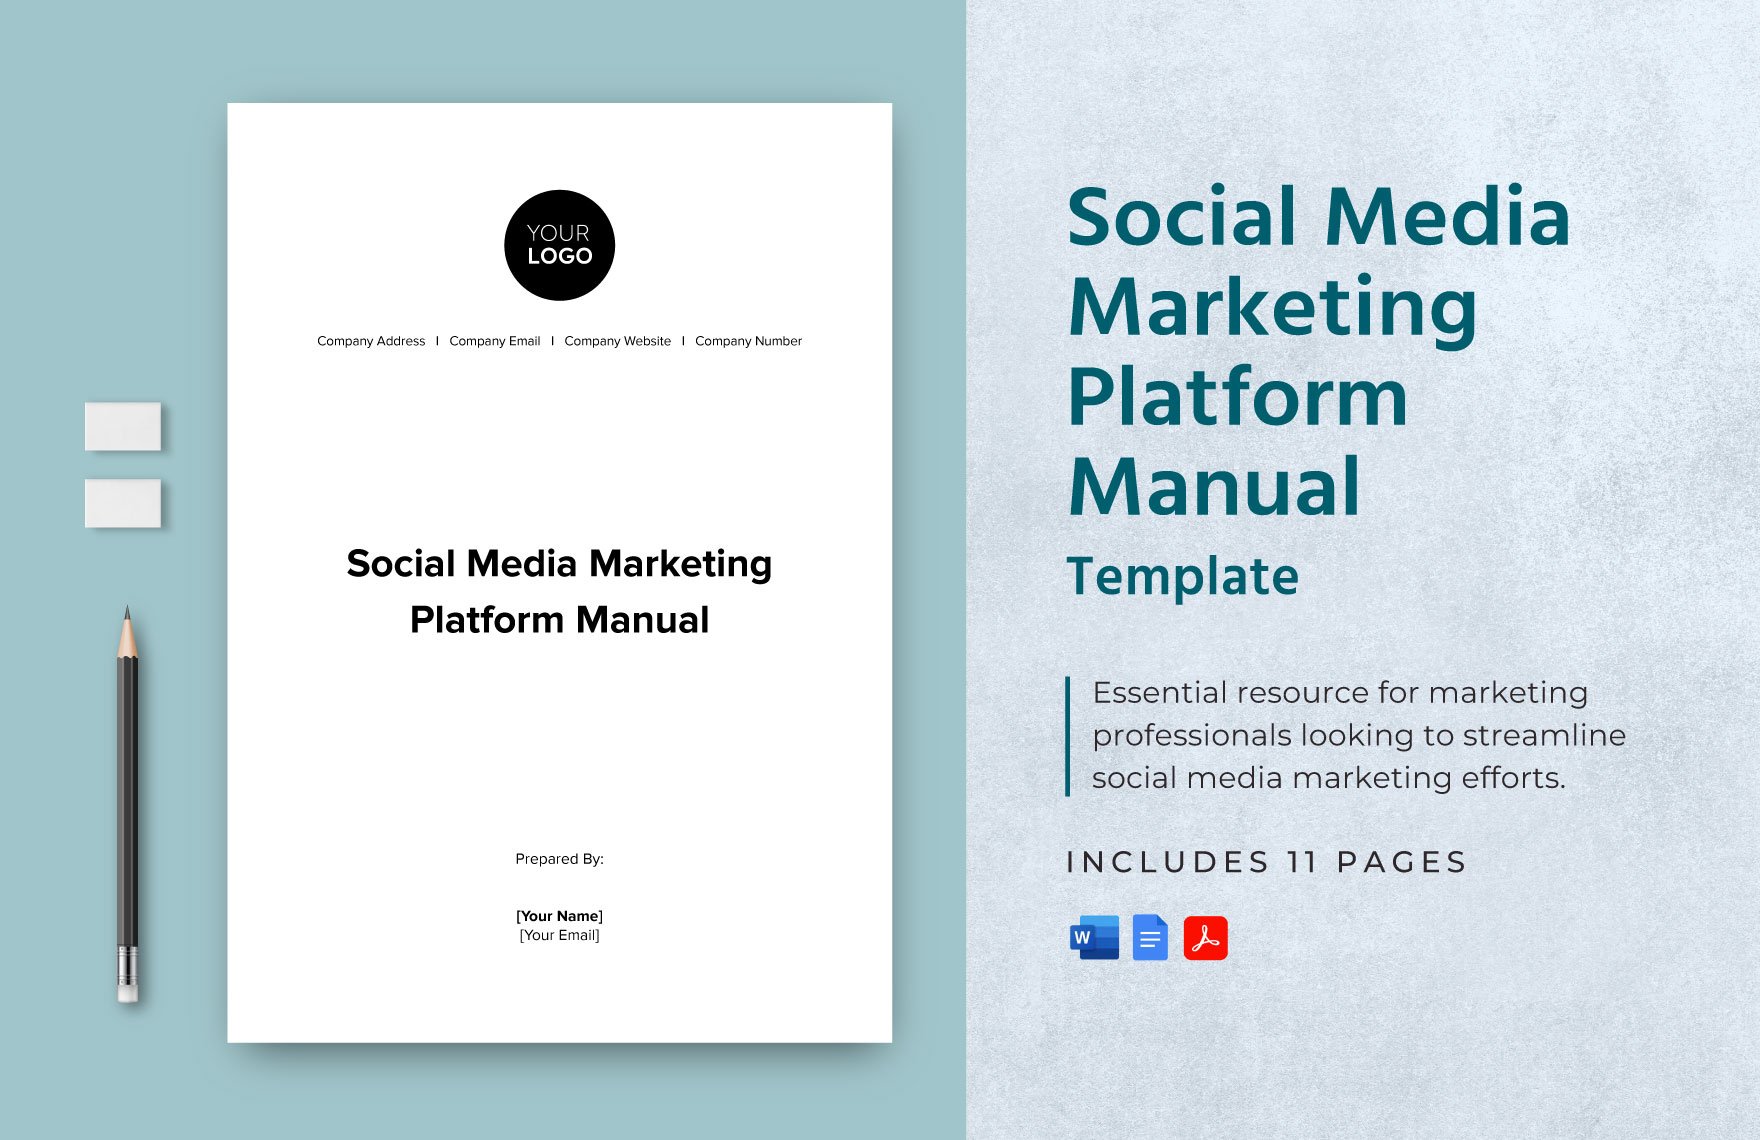 Social Media Marketing Platform Manual Template